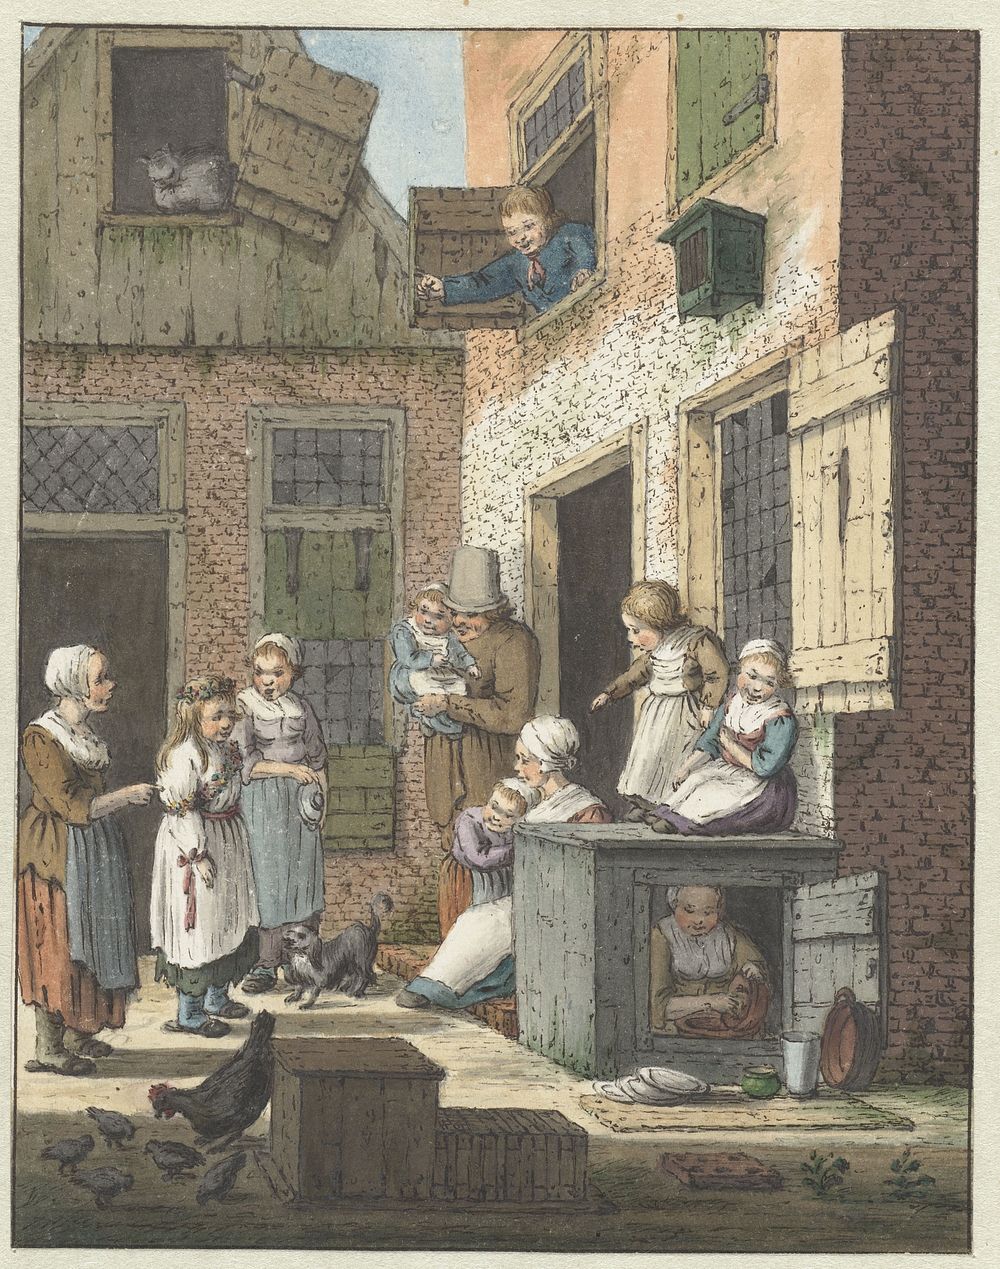 Groep mensen voor de deur van een woning (1758 - 1808) by Christina Chalon